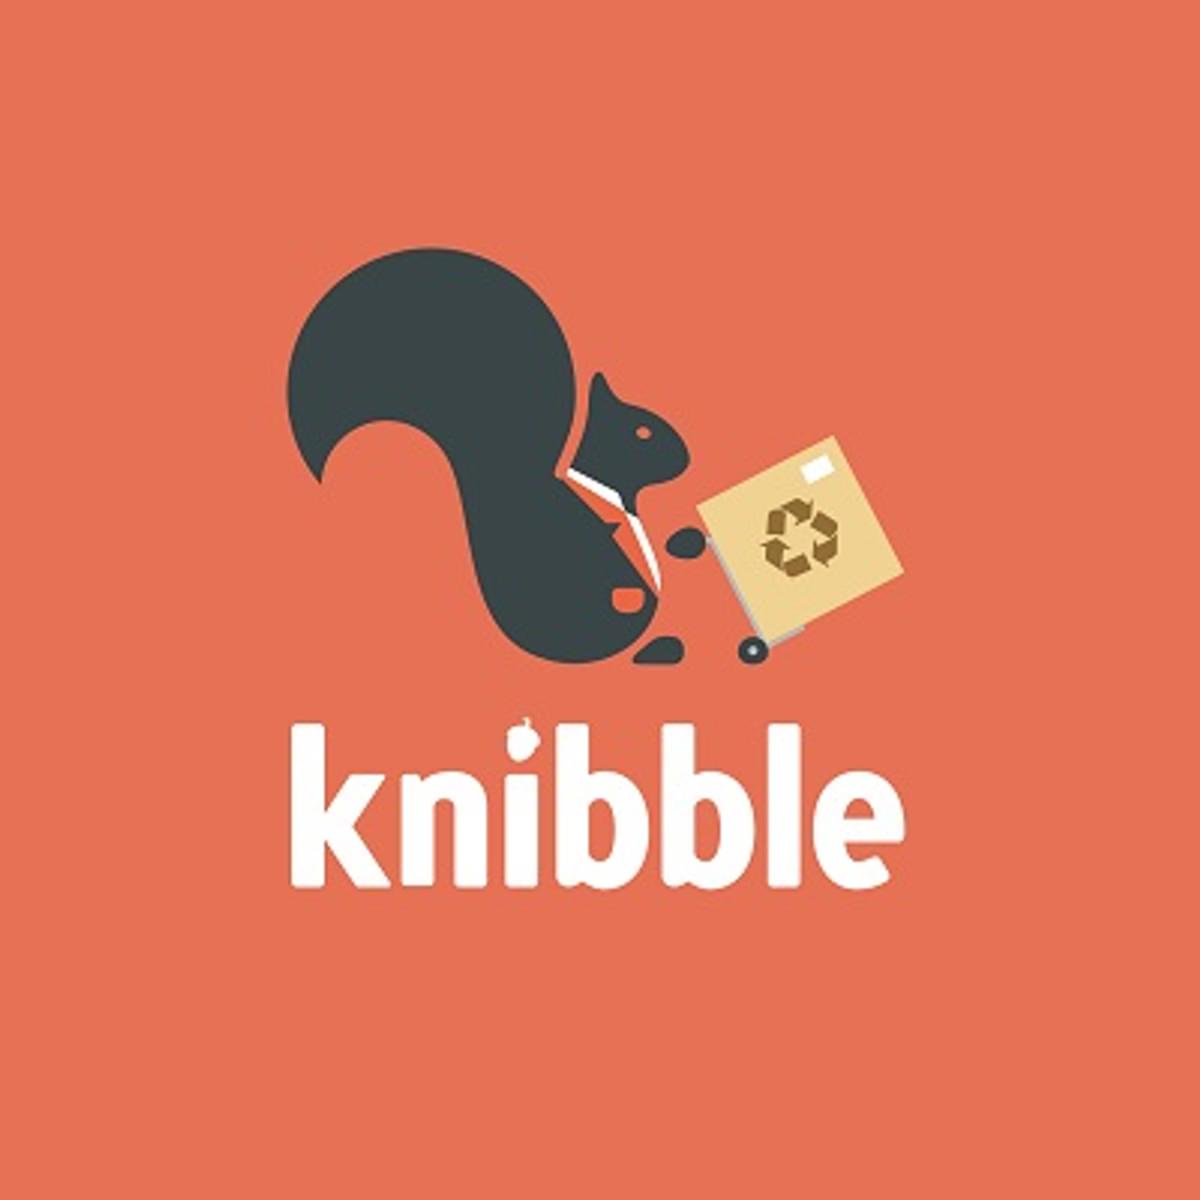 Vergelijkingswebsite Knibble biedt realtime prijzen van elektronica image